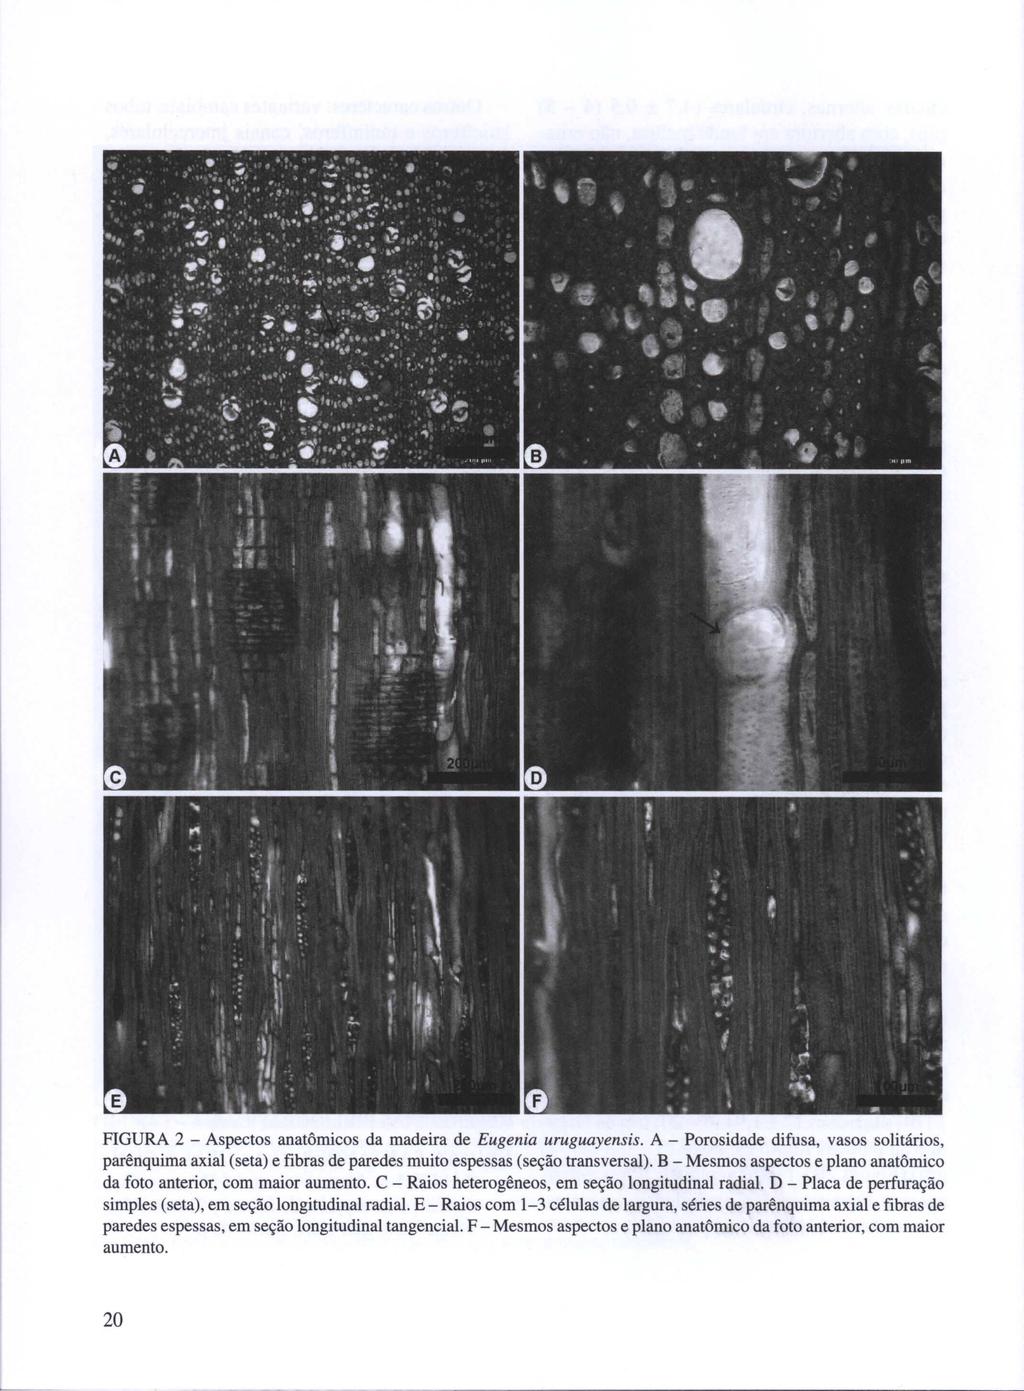 FIGURA 2 - Aspectos anatômicos da madeira de Eugenia uruguayensis. A - Porosidade difusa, vasos solitários, parênquima axial (seta) e fibras de paredes muito espessas (seção transversal).